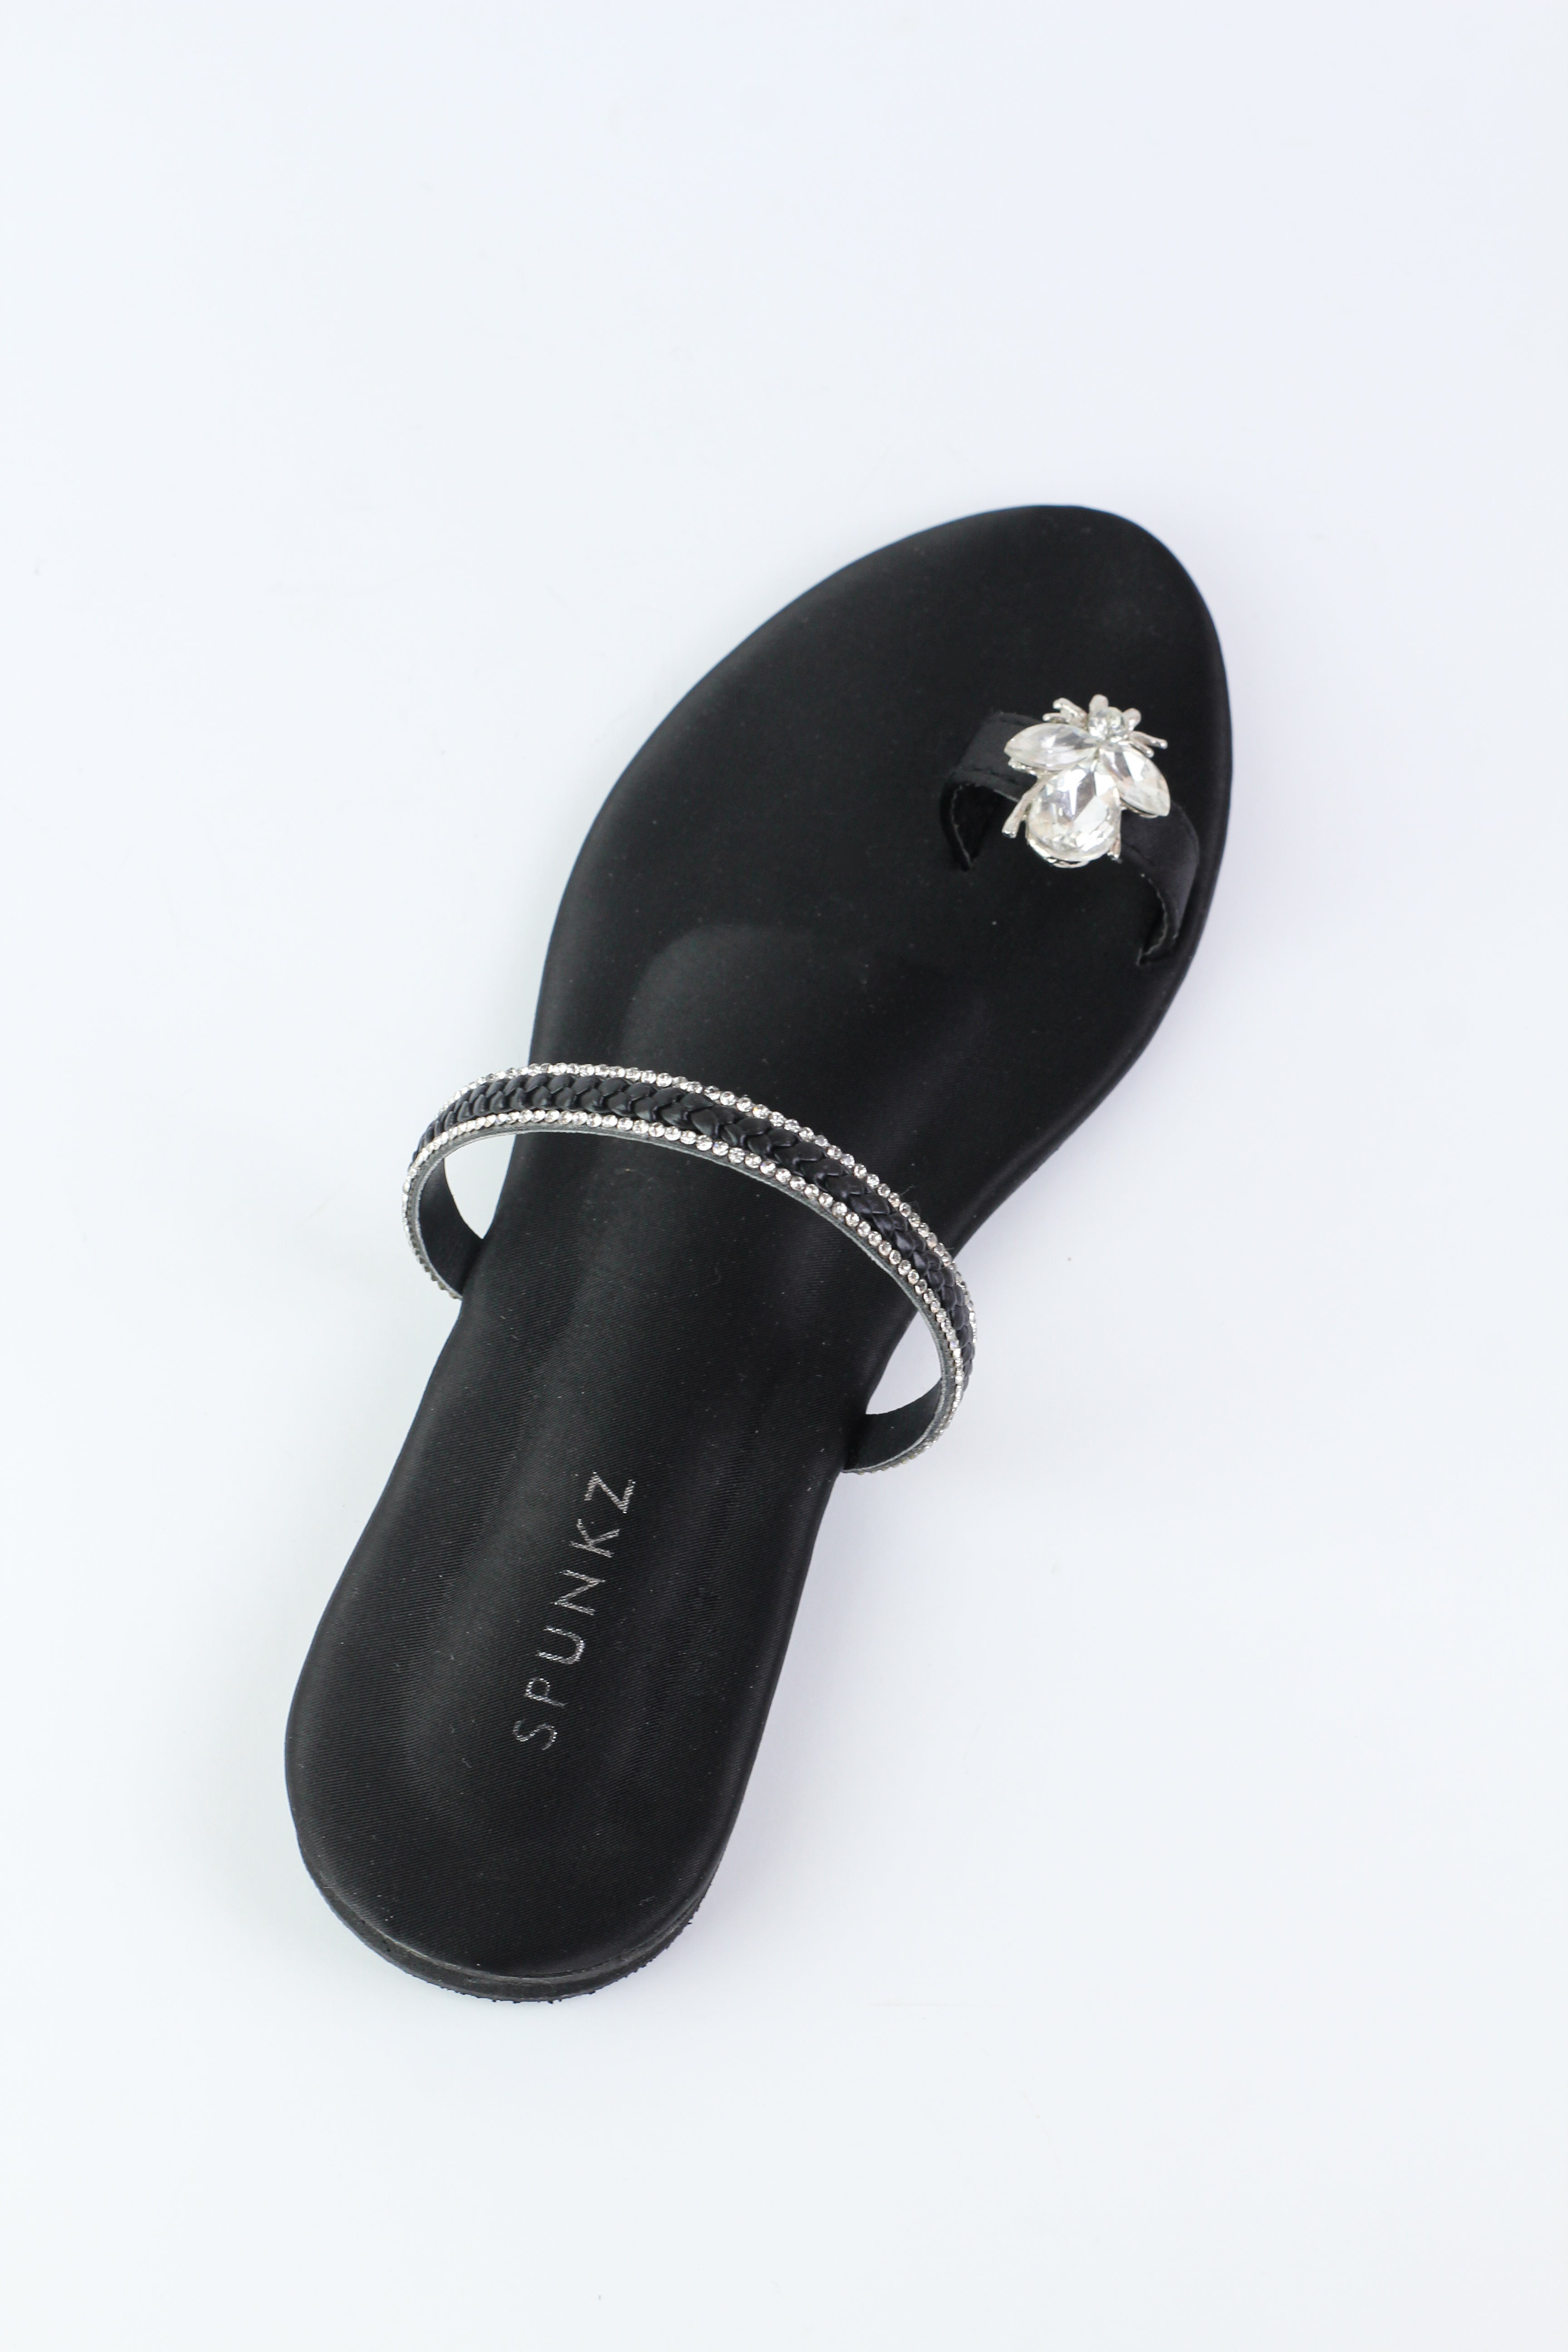 2022 Summer Women Diamond Sandals Beach Shoes Flip-flops Comfortable Flat  Slippers Fashion Girls Street Wear B8887 - Women's Sandals - AliExpress